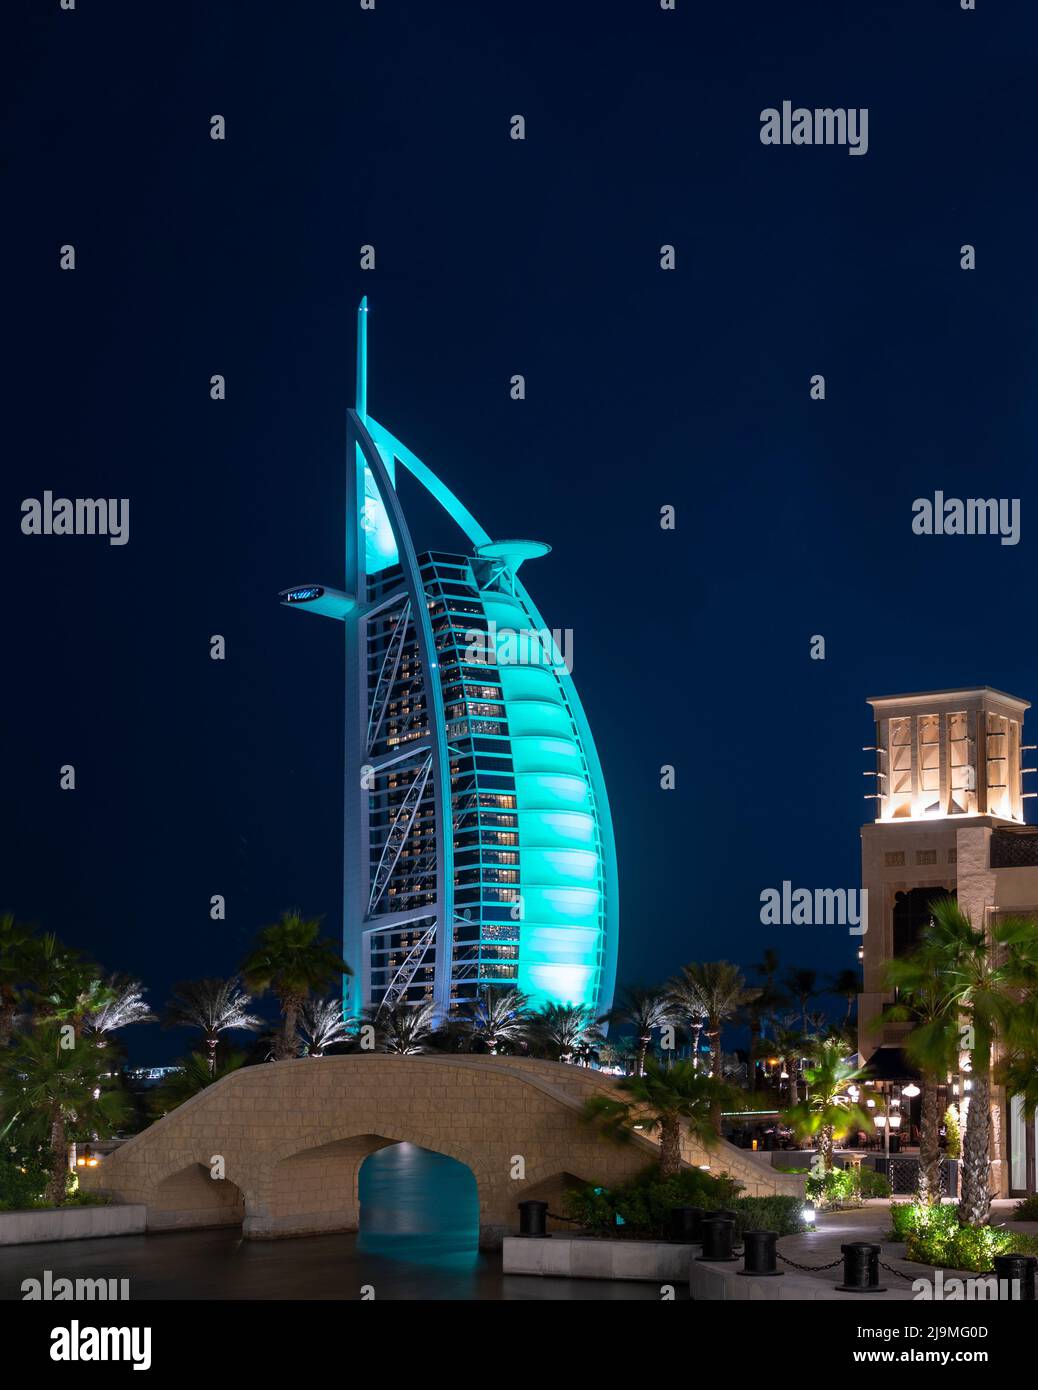 Vue de l'hôtel Burj al Arab illuminé capturé depuis le souk Madinat Jumeirah, Dubaï, Émirats arabes Unis. Banque D'Images